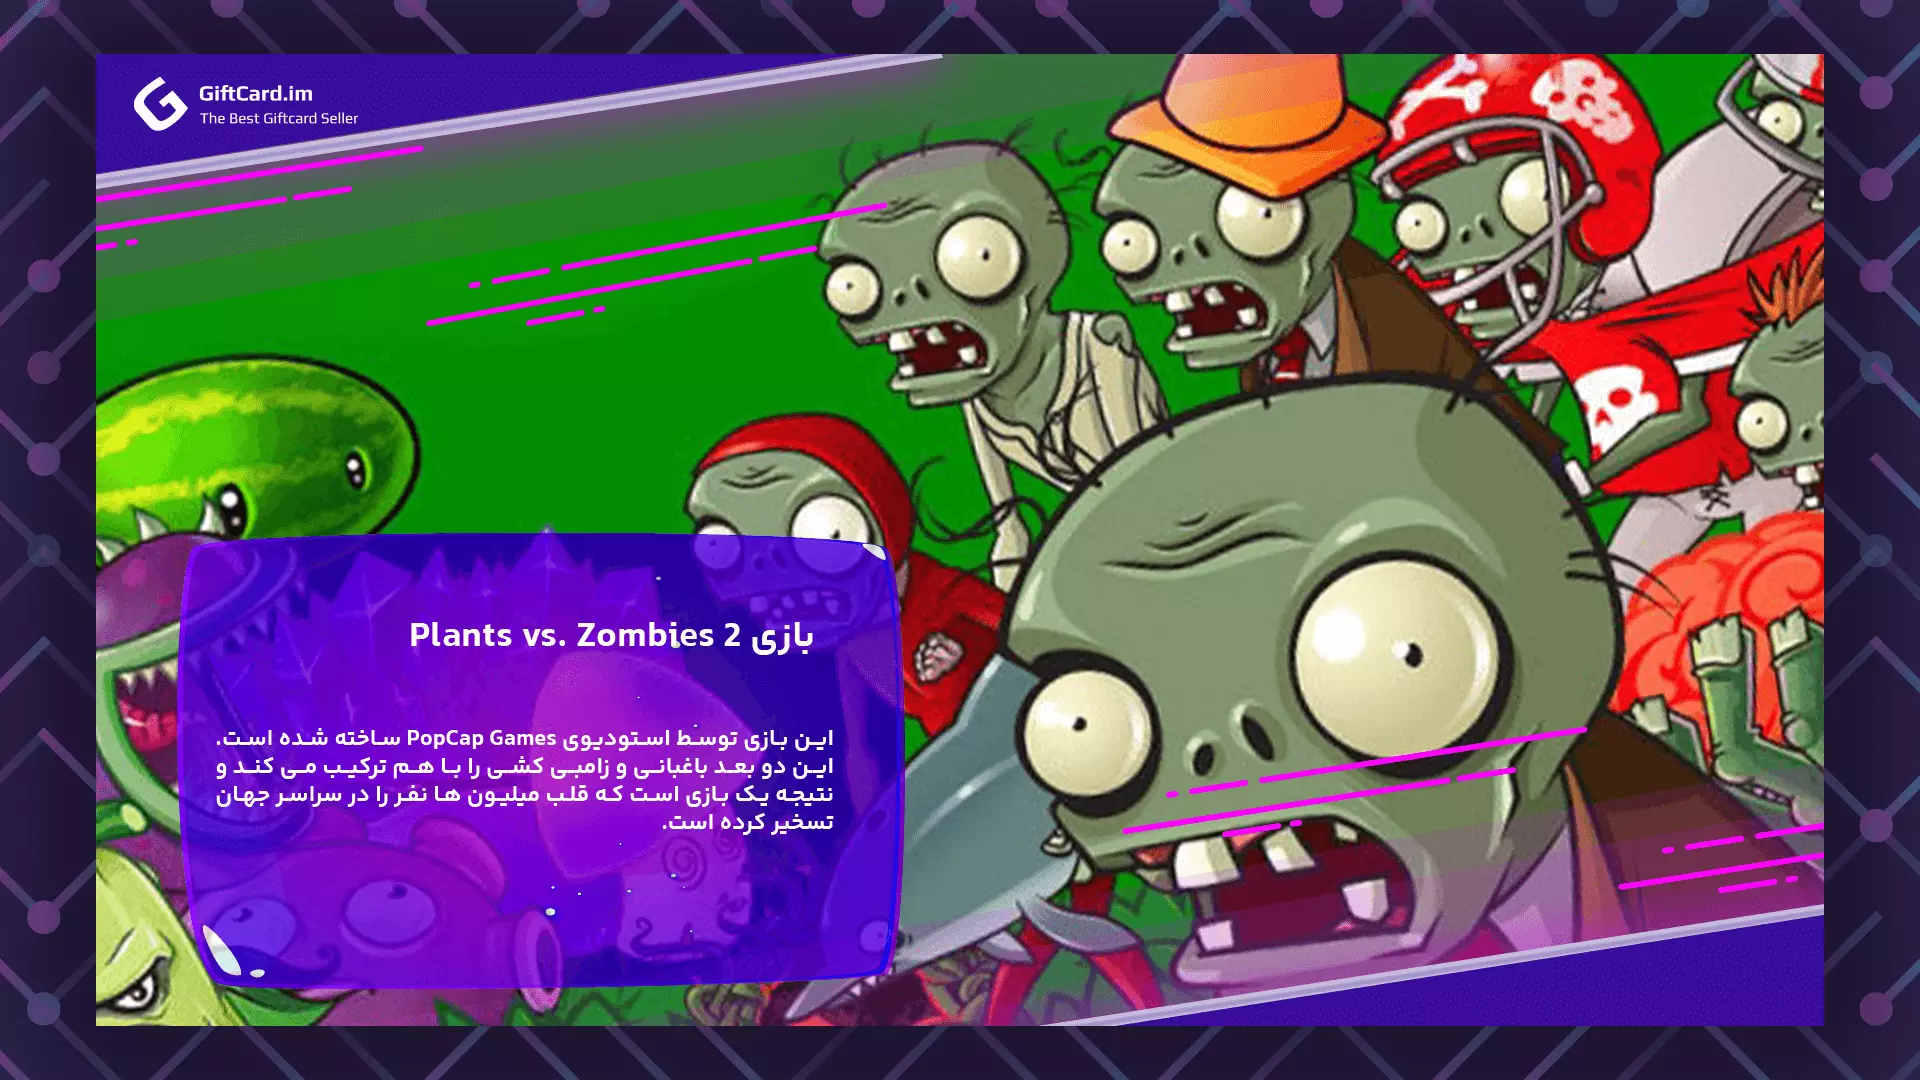 داستان بازی plants vs. zombie2 | خرید سکه و جم بازی گیاهان در مقابل زامبی ها | خرید گیفت کارت